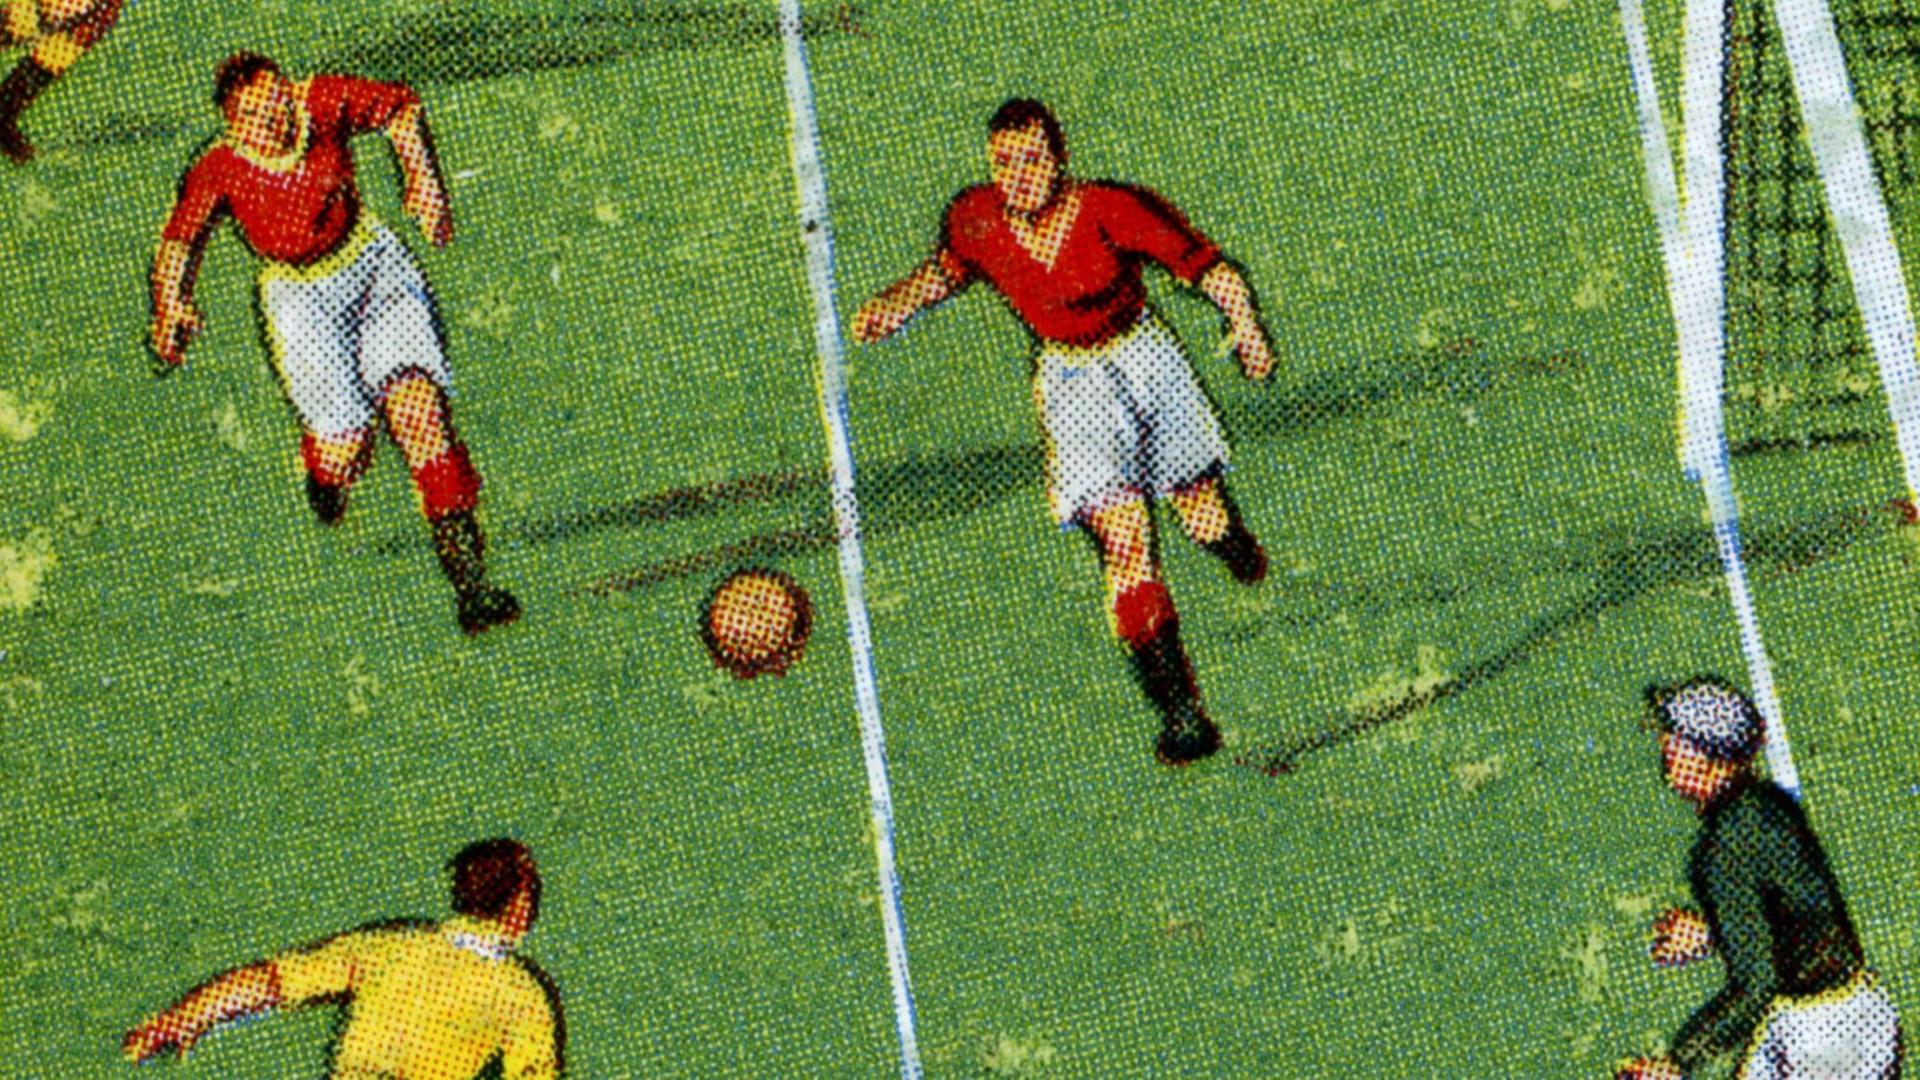 Illustration von einem Fußballspiel.